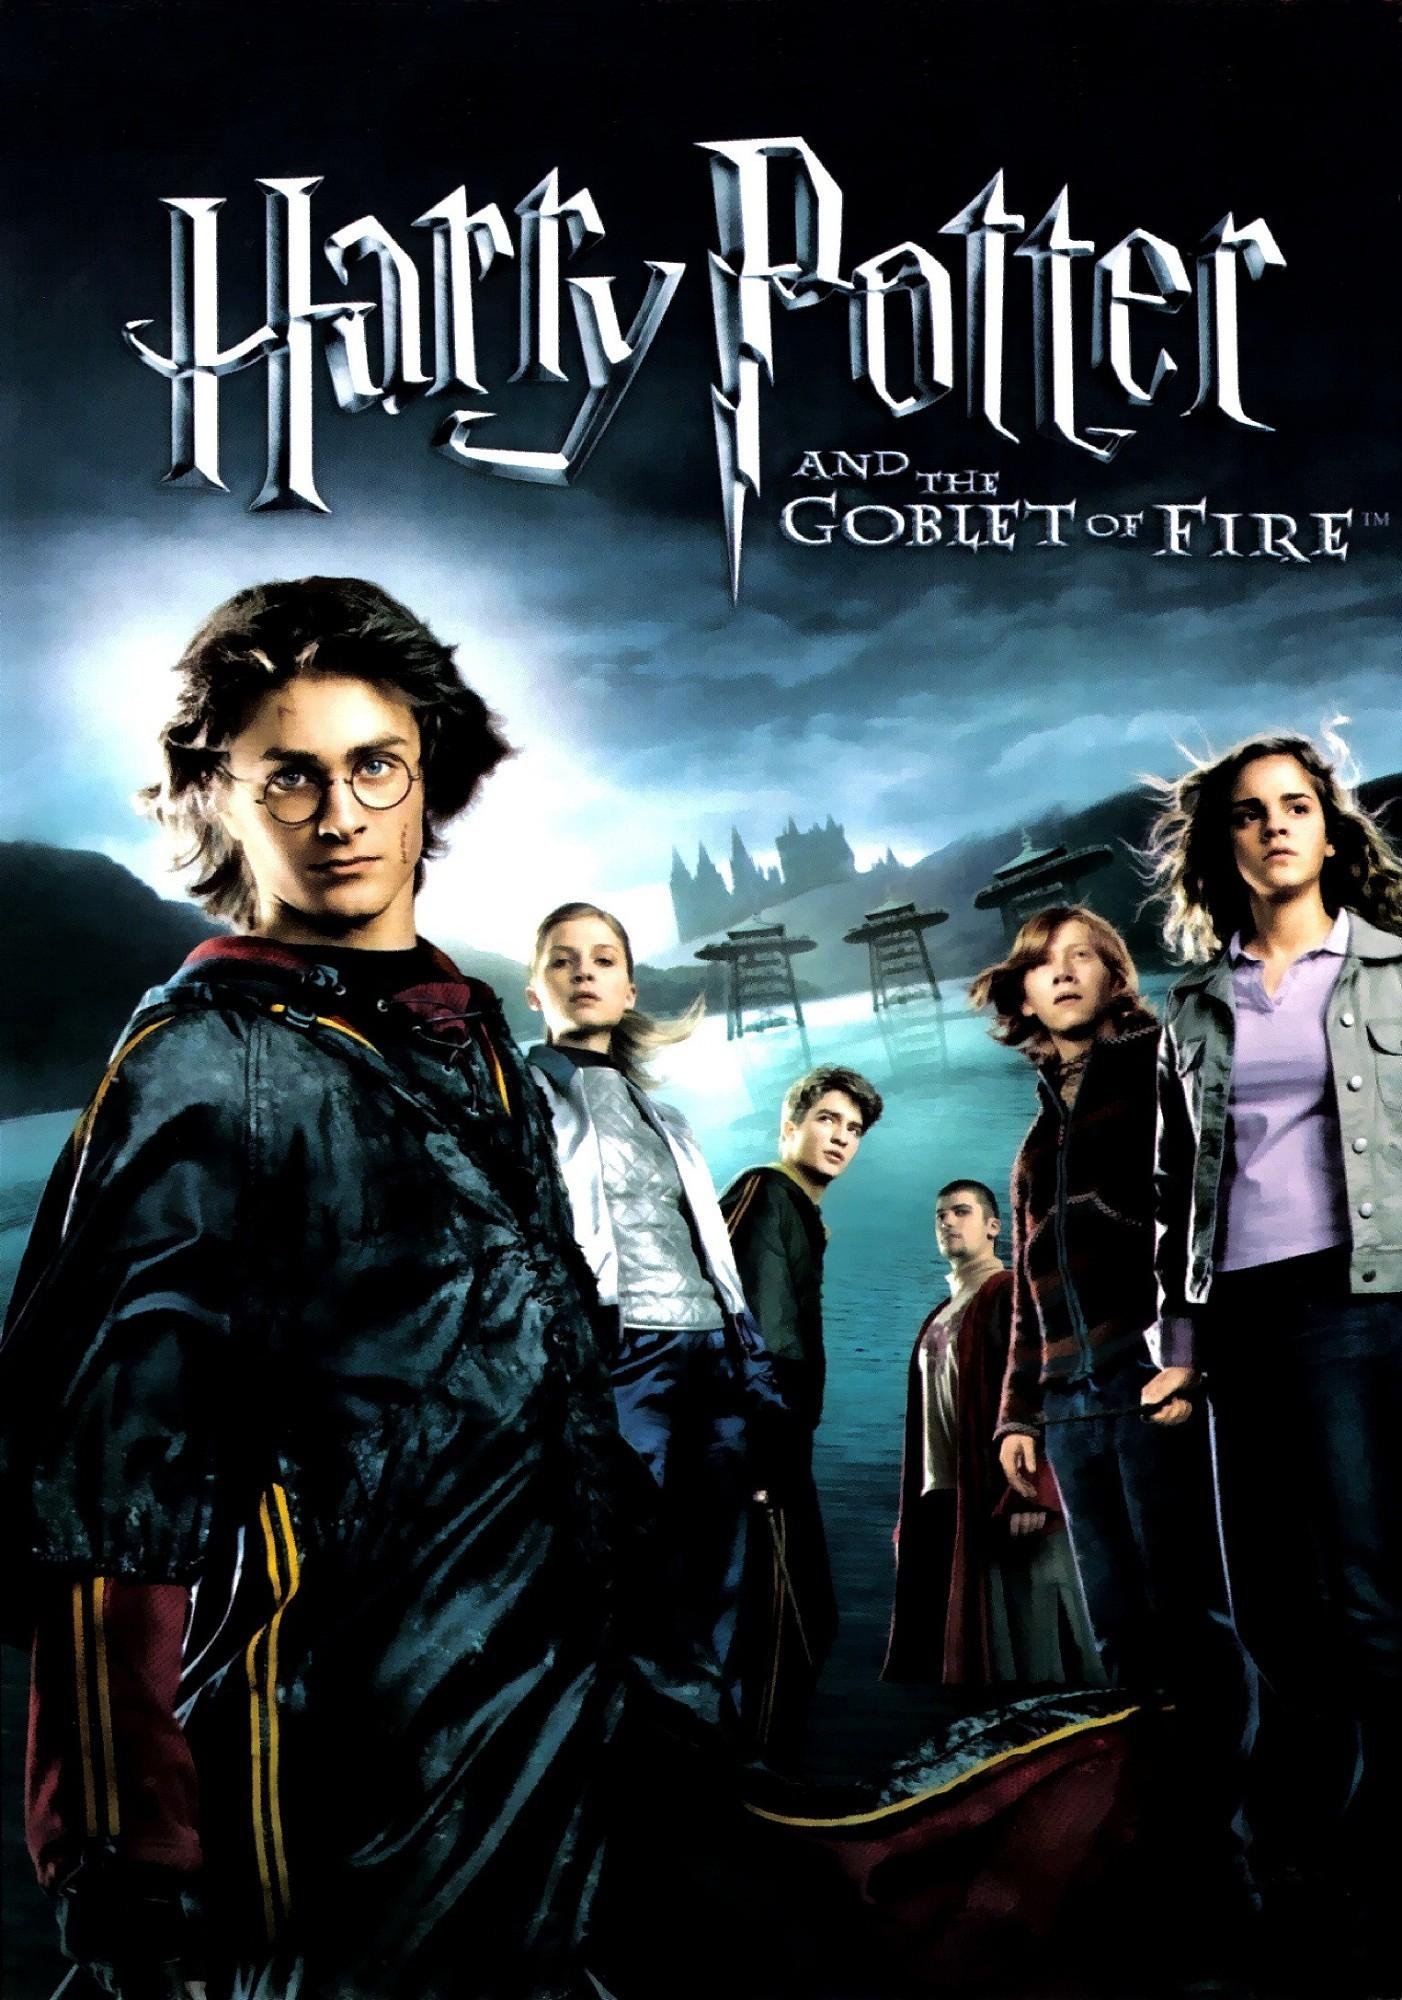 L'affiche du film Harry Potter et la coupe de feu